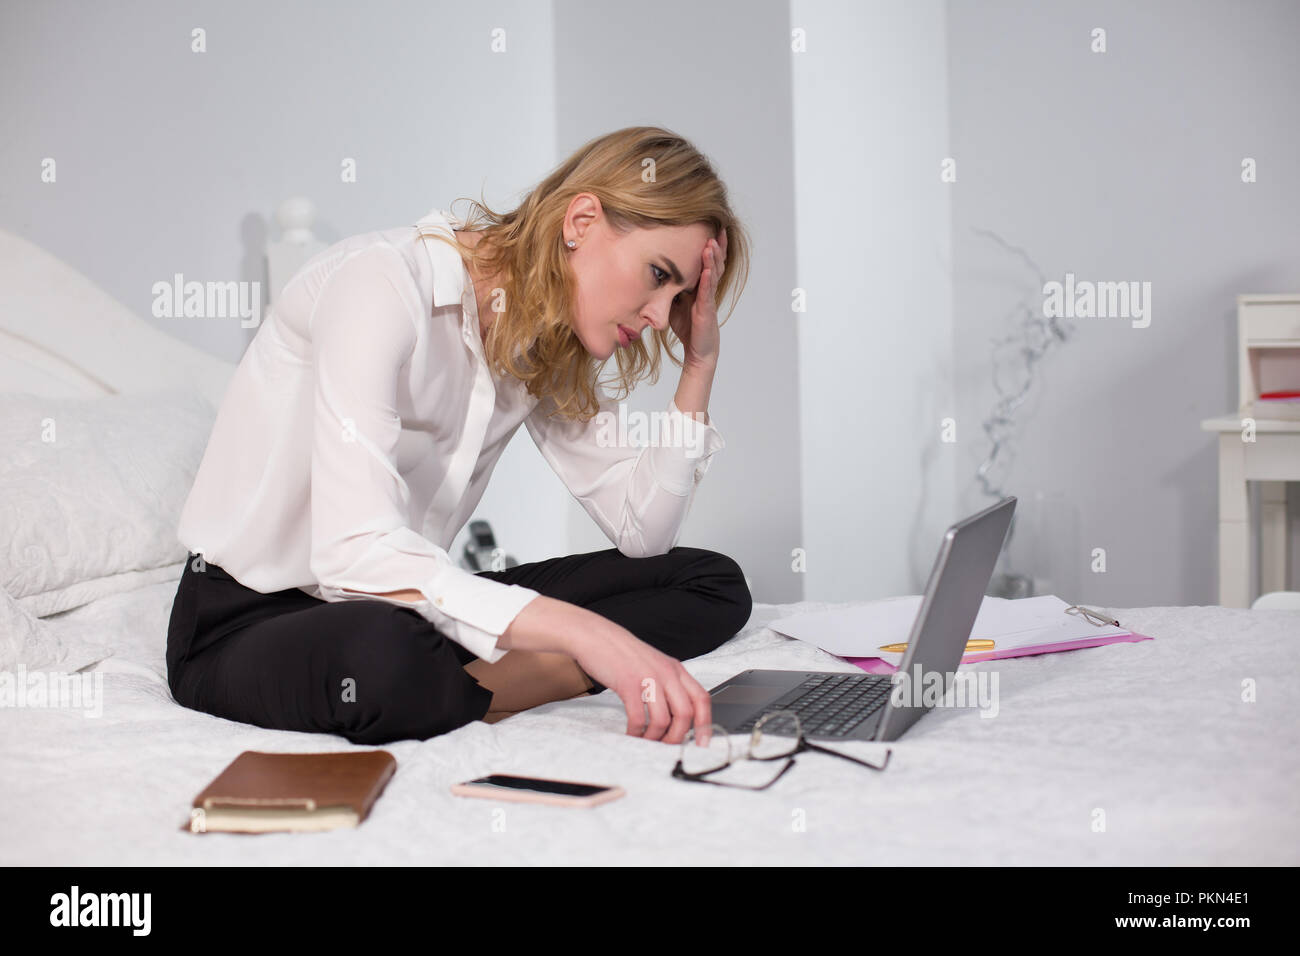 Business Woman sitting on bed et de travail Banque D'Images